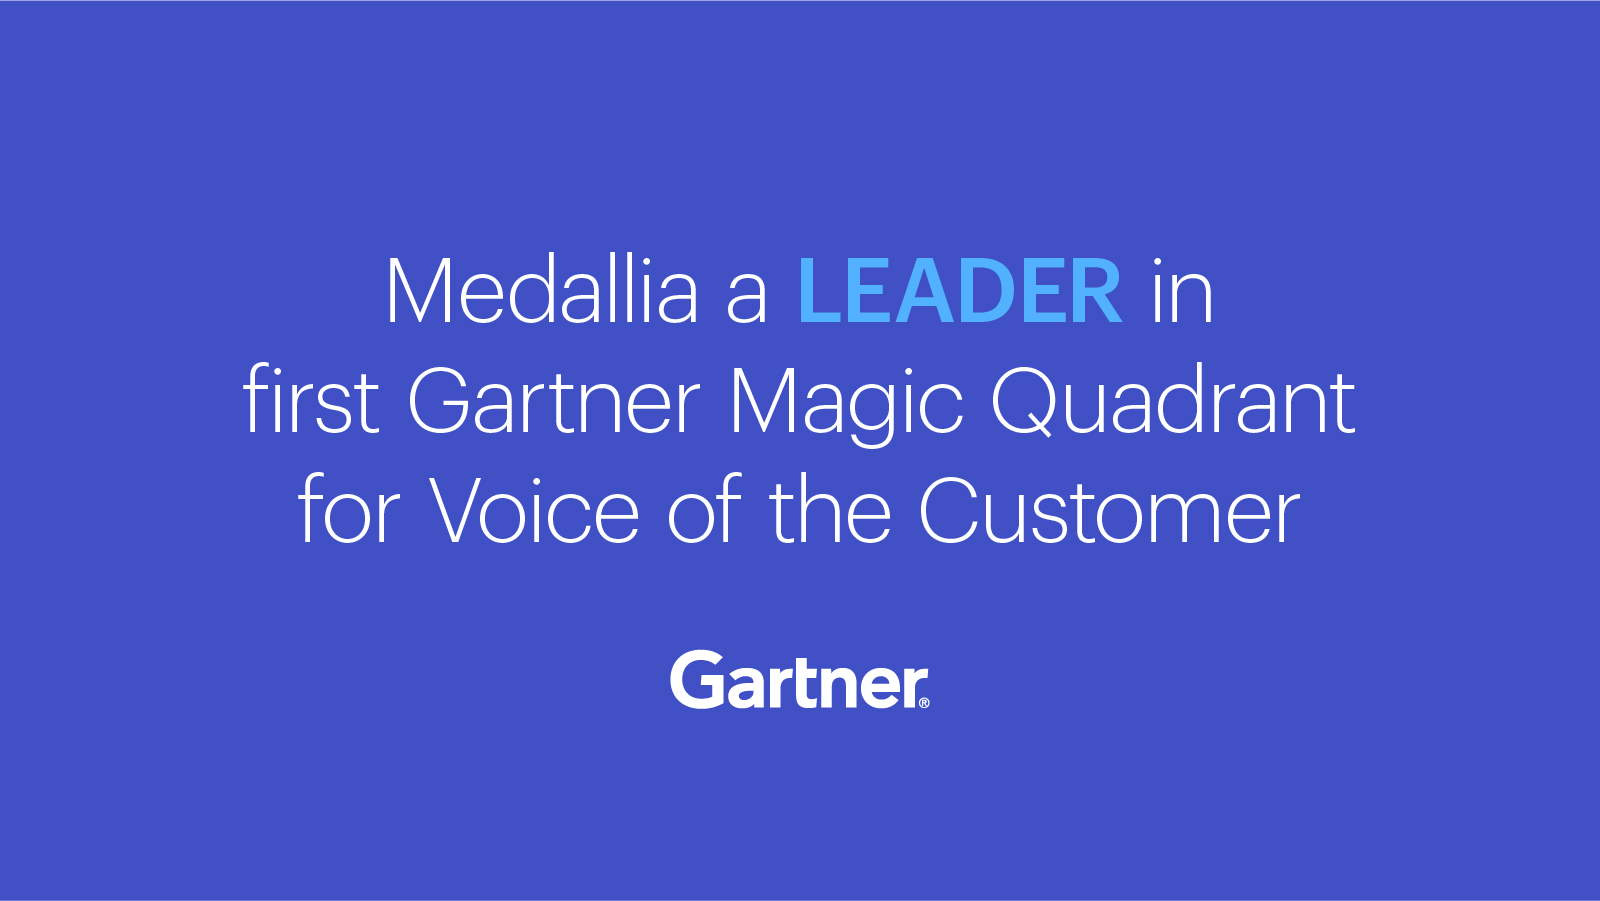 Gartner Magic Quadrant for Voice of the Customer